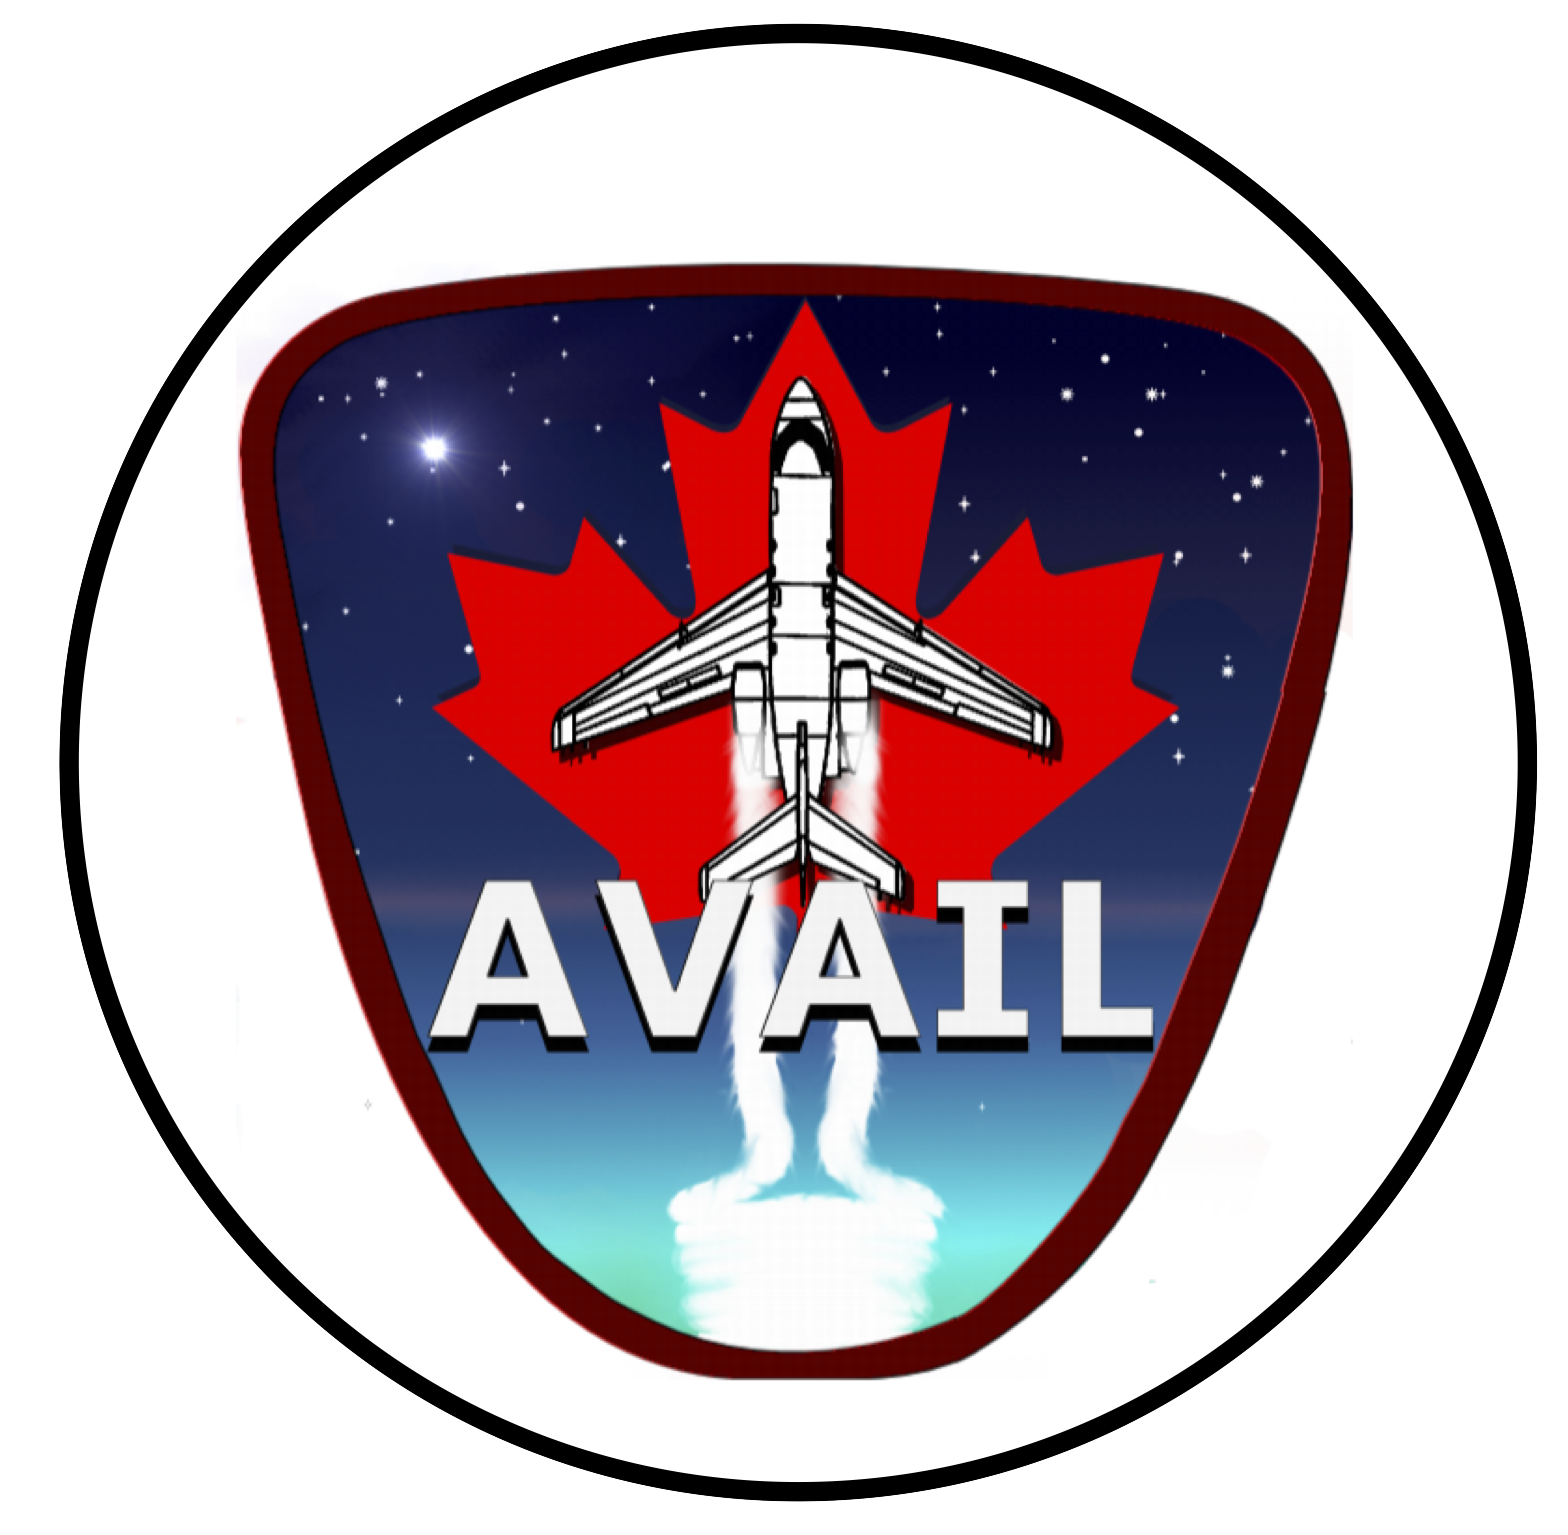 Team AVAIL(Univ. of Toronto/UTIAS)